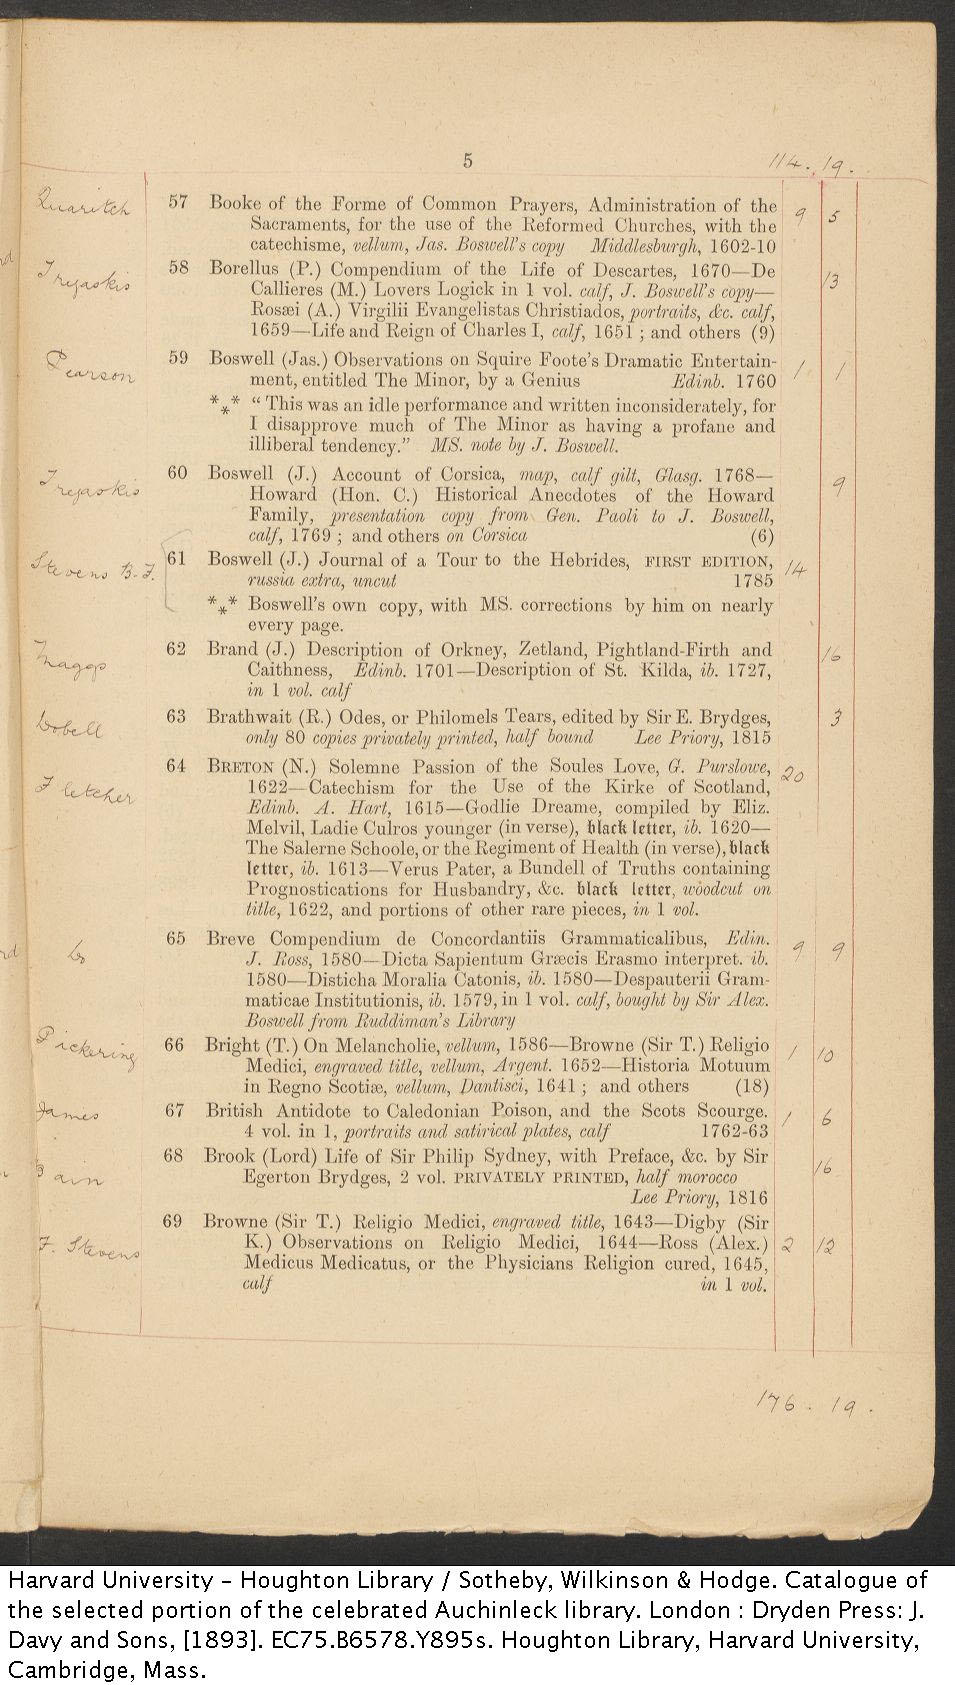 Auchinleck sale catalog, 1893